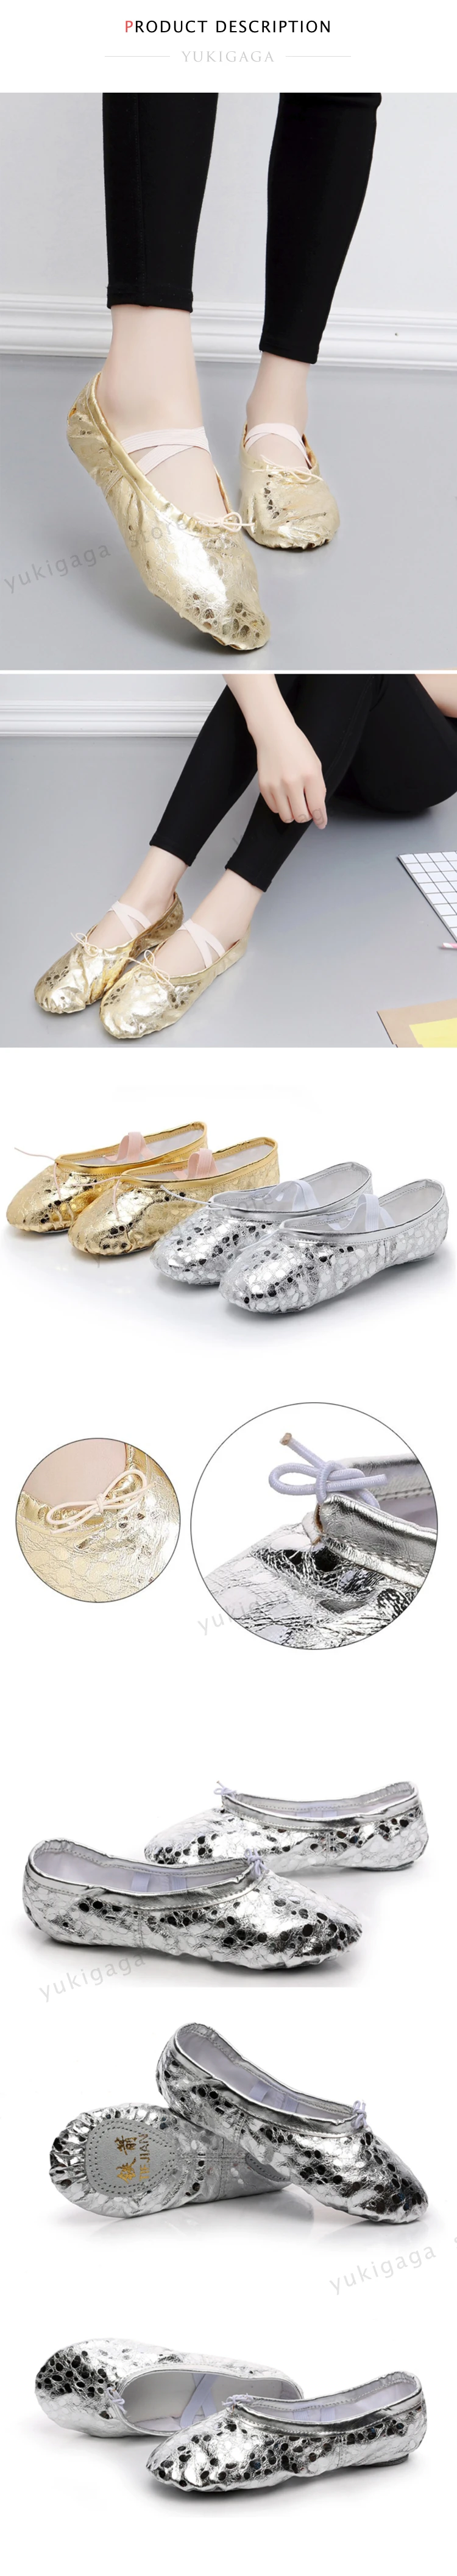 Yukigaga топ из полиэстера золотого цвета индийских женщин обувь для танцы живота Кожа Живота балетная танцевальная обувь для детей для девушки и женщины, Женская a03e